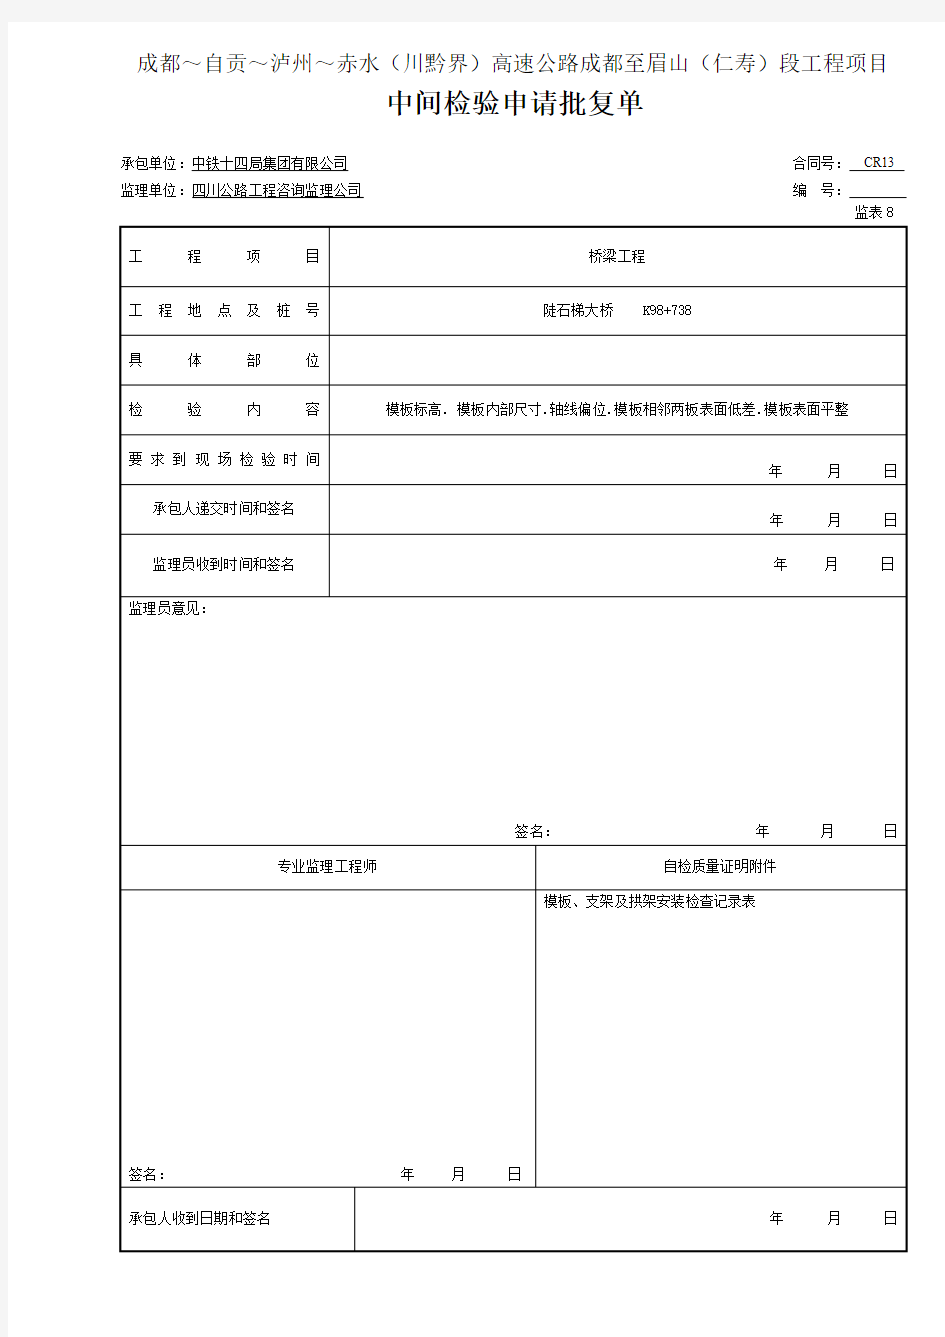 3  模板  中间检验申请批复单(表8钢筋1